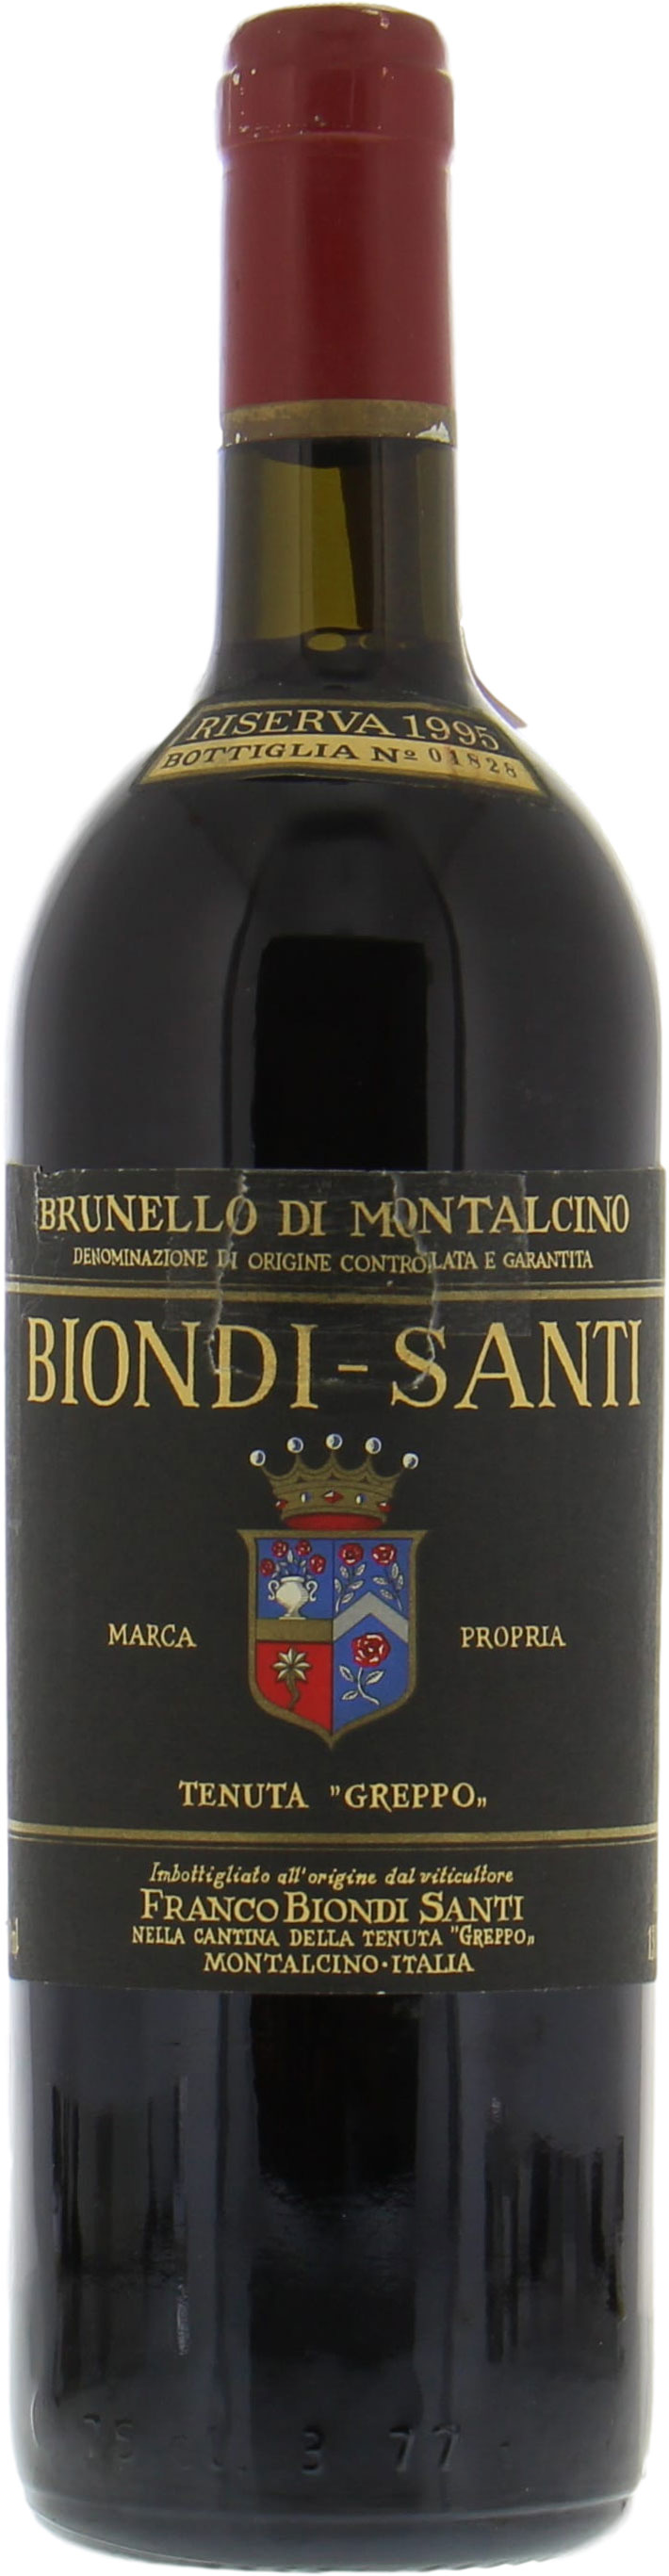 Biondi Santi - Brunello Riserva Greppo 1995 Perfect